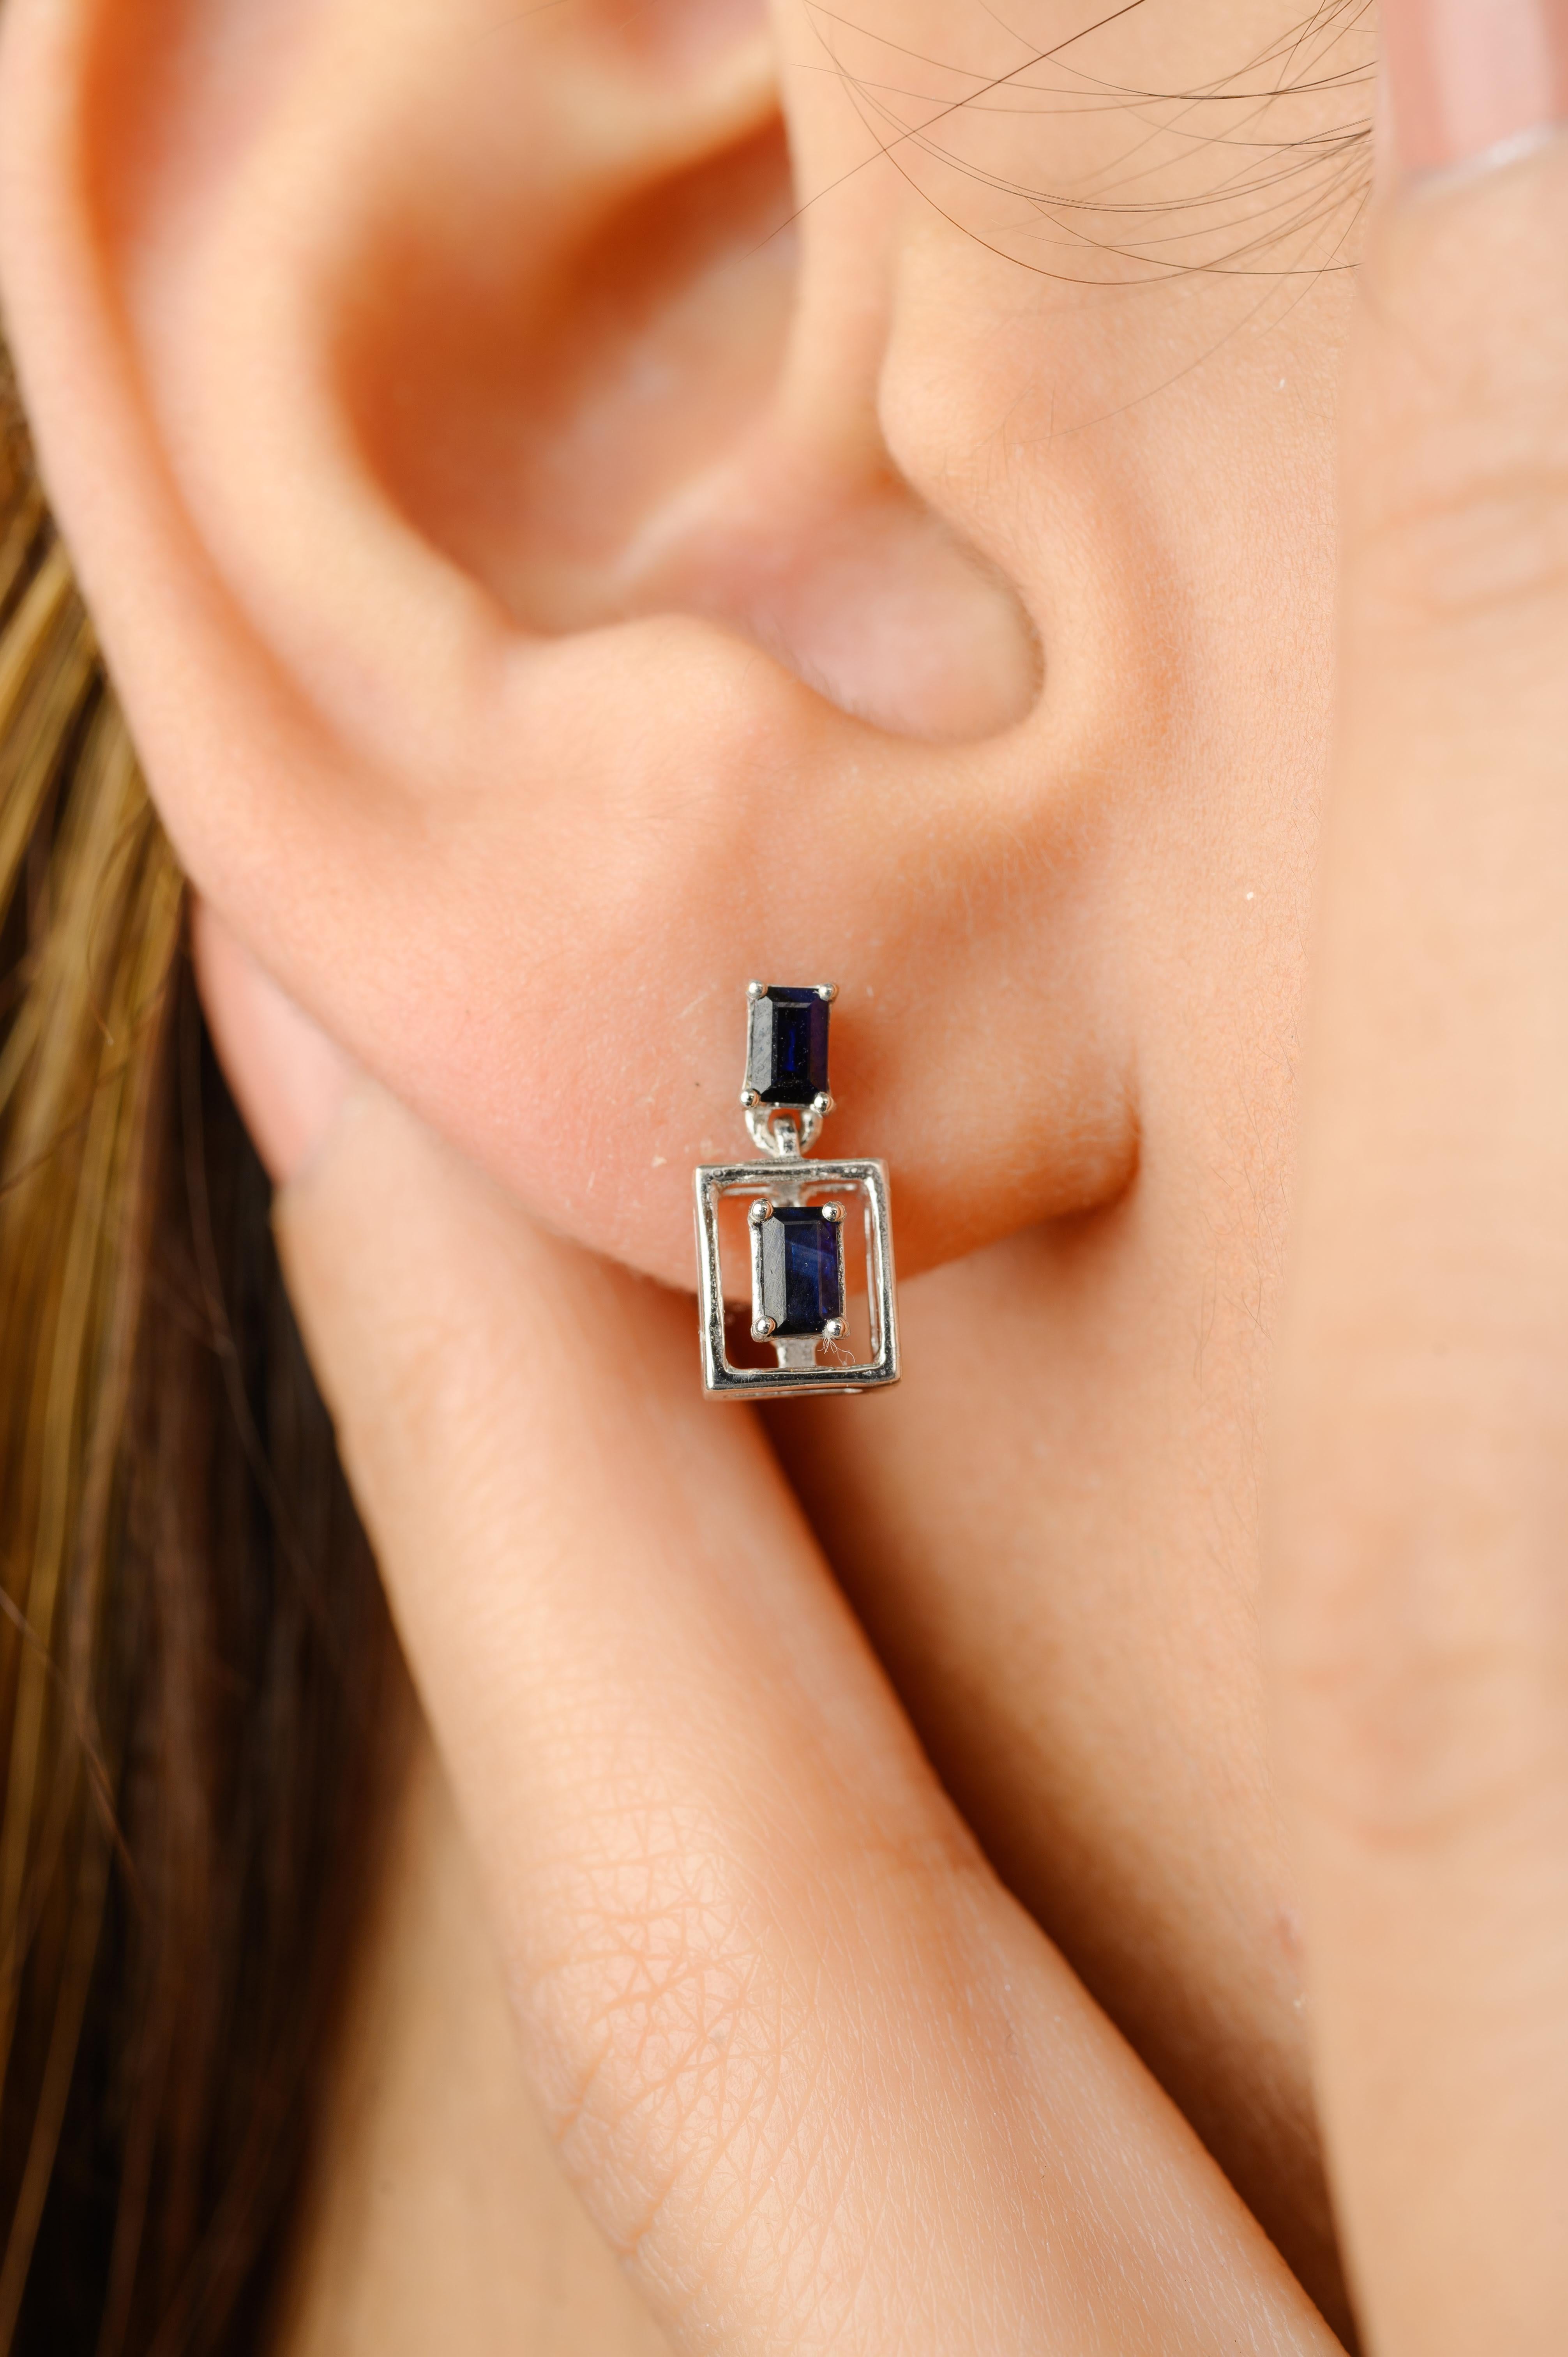 Eingerahmte Ohrringe mit blauem Saphir im Baguetteschliff aus 18 Karat Gold, um Ihren Look zu unterstreichen. Sie brauchen Ohrstecker, um mit Ihrem Look ein Statement zu setzen. Diese Ohrringe mit einem blauen Saphir im Baguetteschliff sorgen für